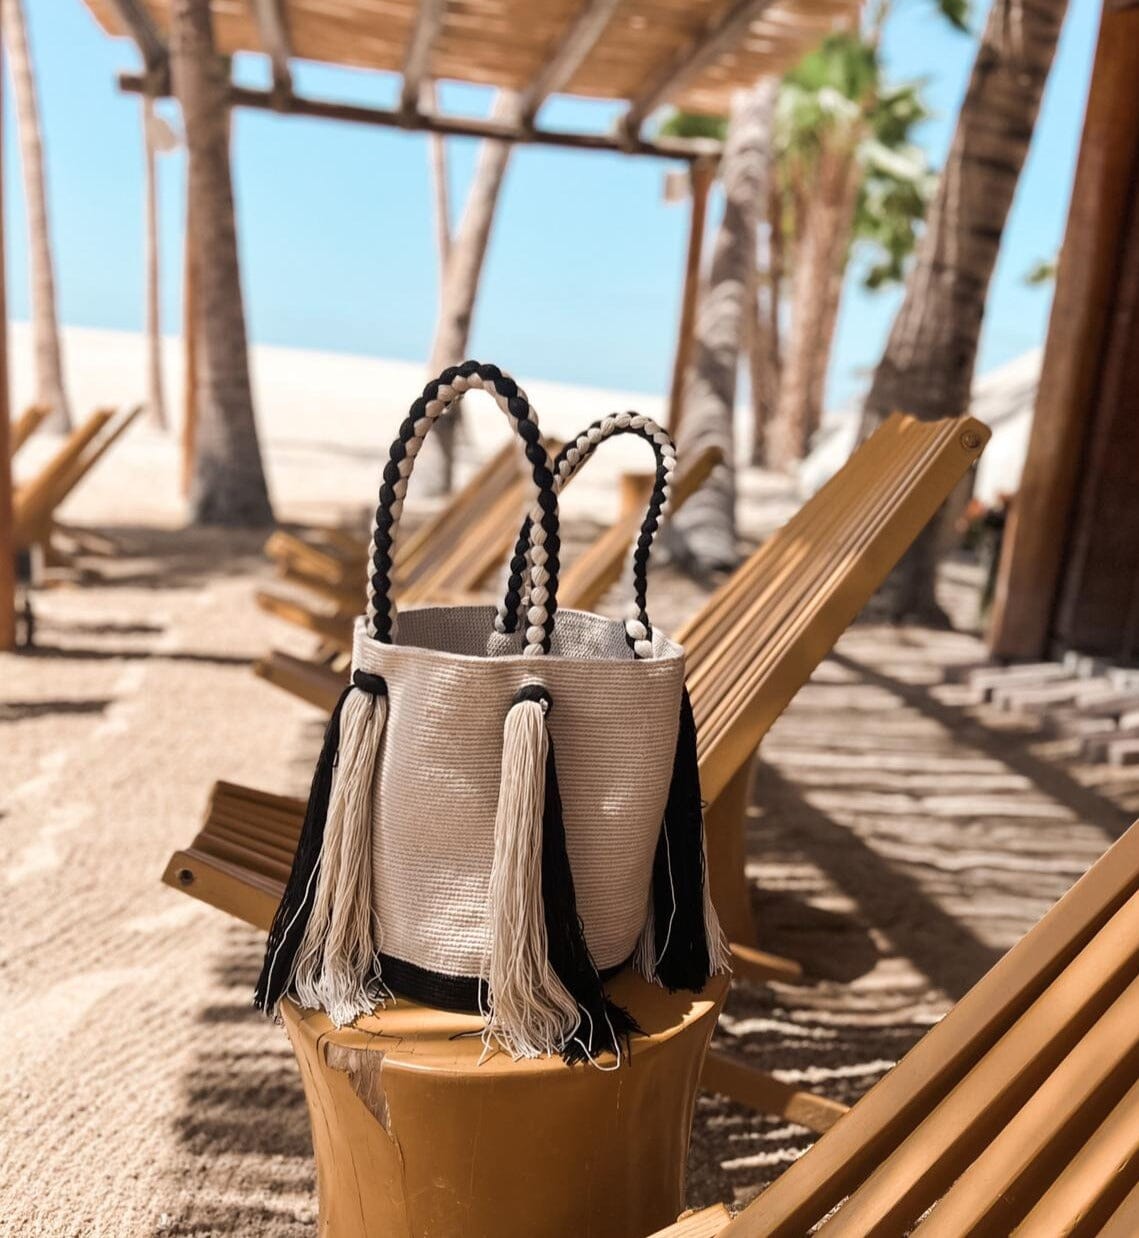 Best Summer Tote Beach Bag | Trending Summer Neutral Tote Bag with Tassels